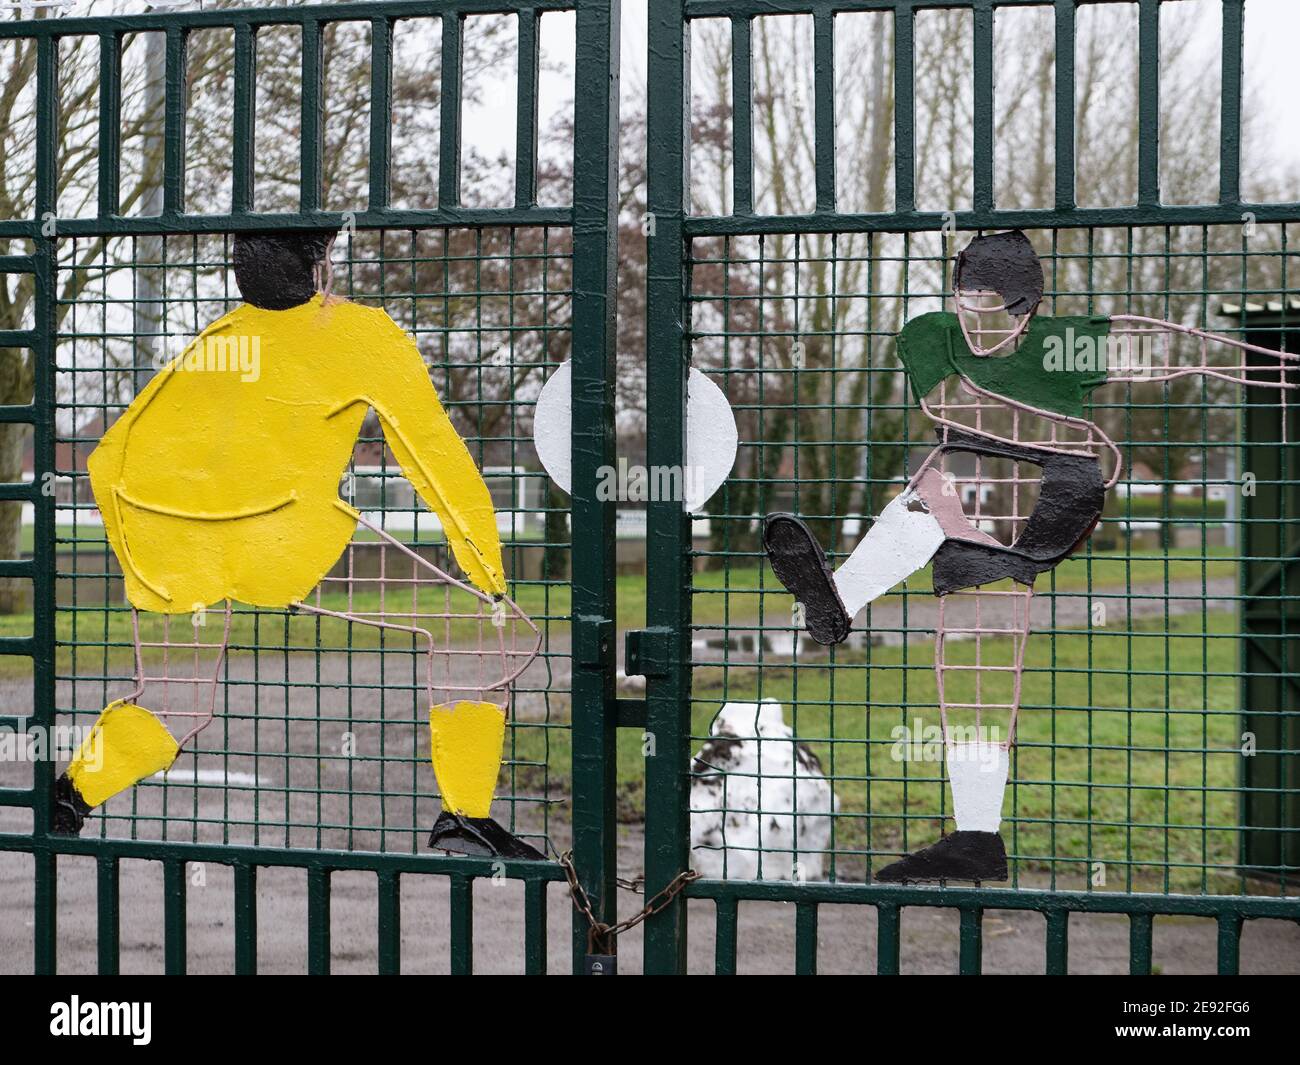 Portes d'entrée du Westbury United football Club montrant des sculptures de joueurs peintes sur elles. Banque D'Images